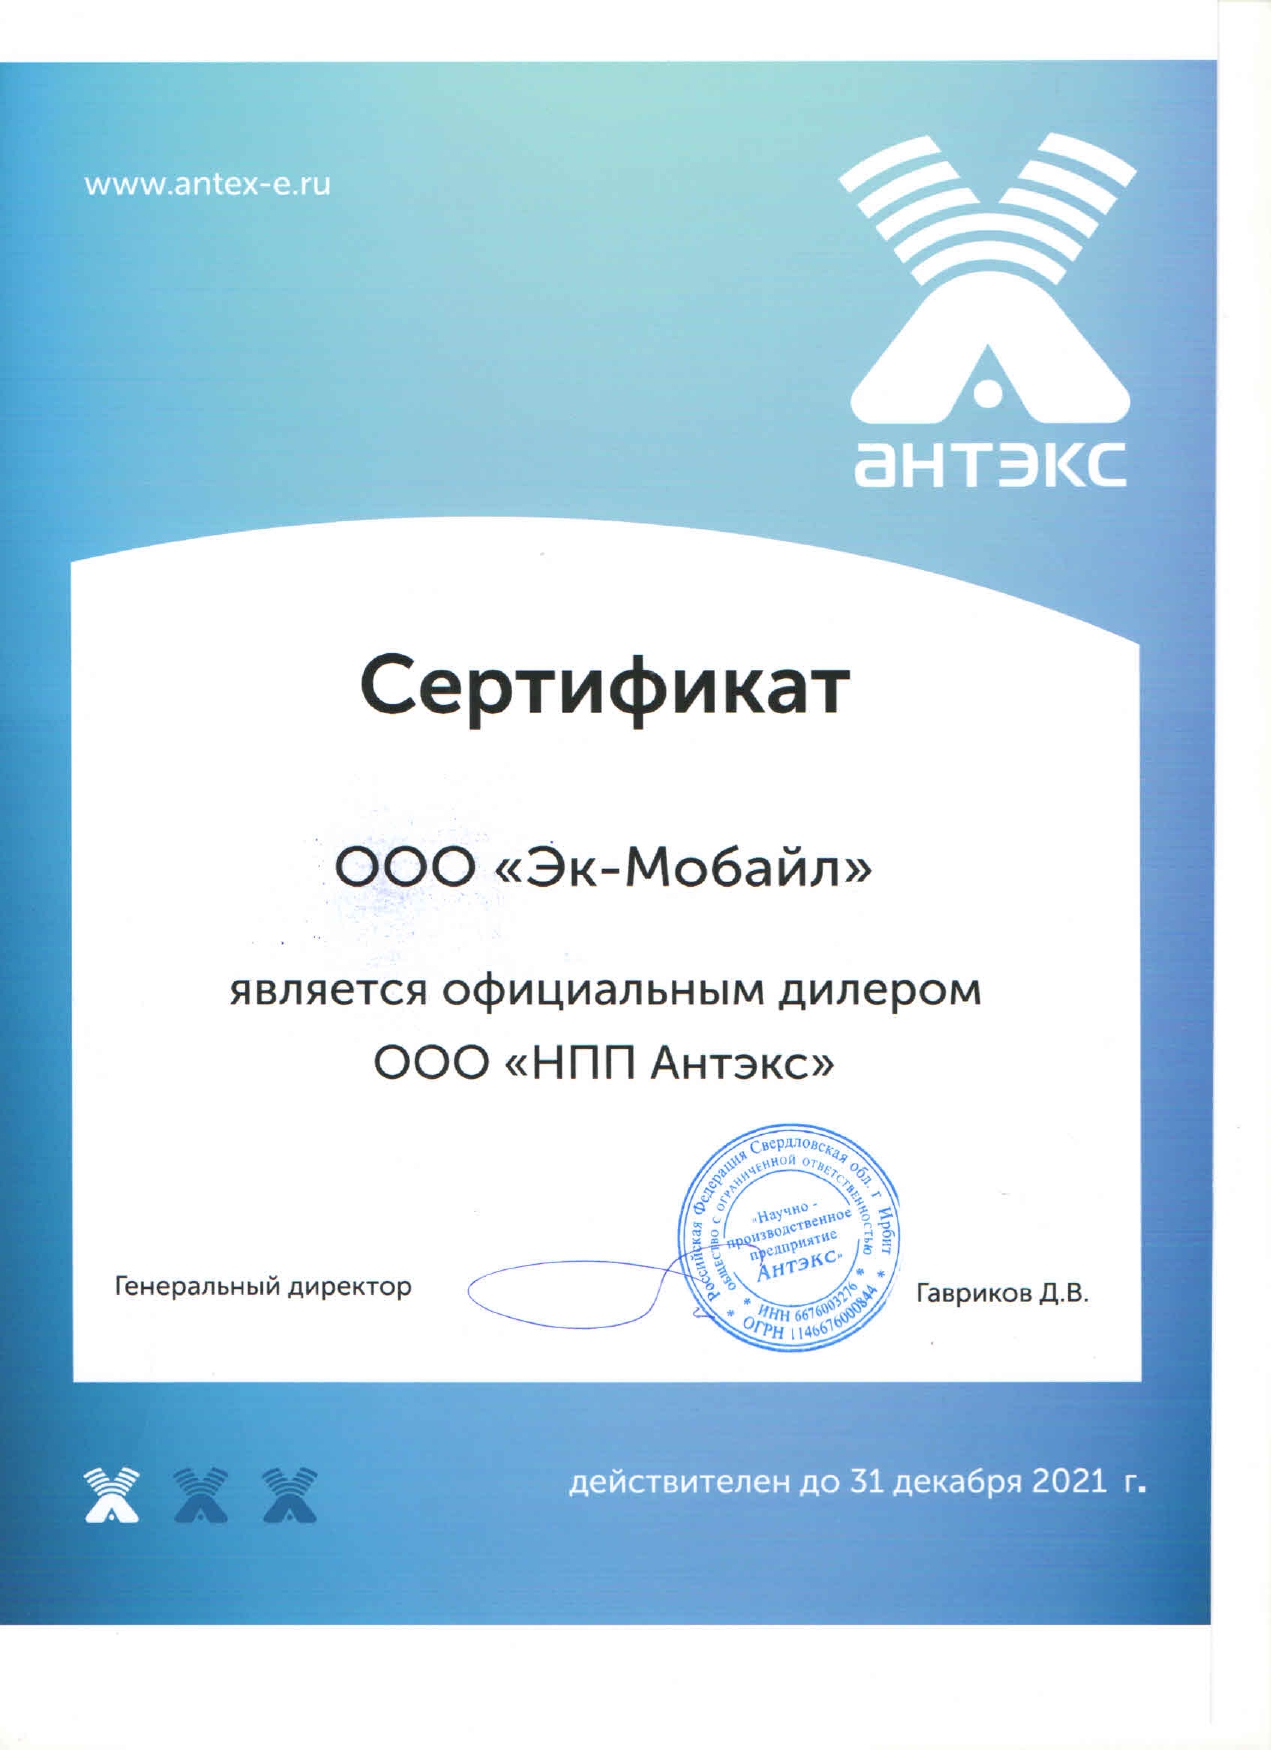 Сертификат на продукцию Антэкс